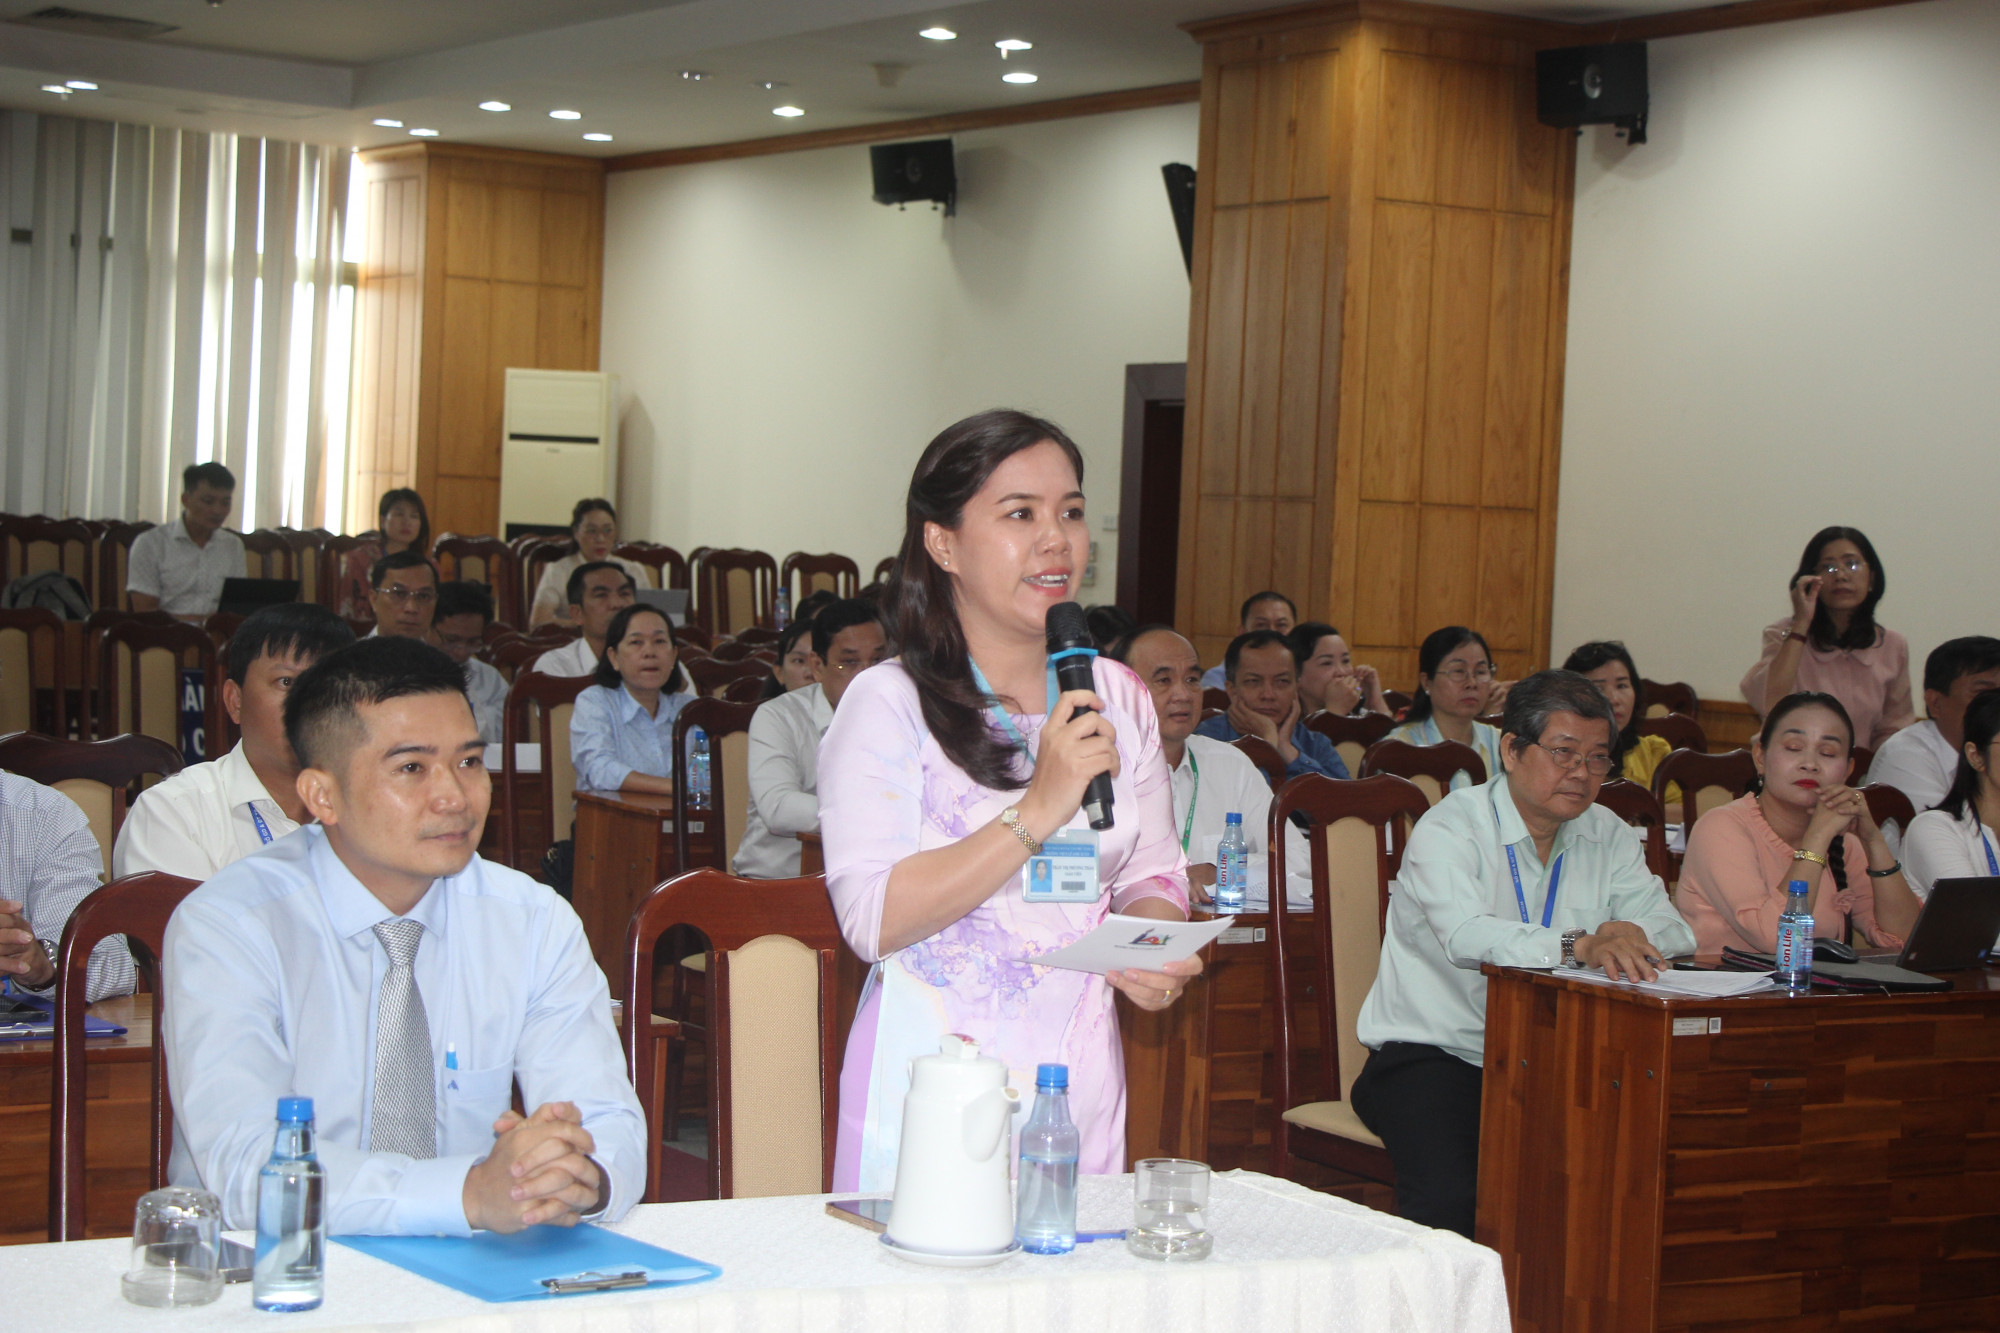 Cô Trần Thị Phương Thảo đại diện gửi tâm tư của đội ngũ giáo viên TPHCM đến Bộ trưởng